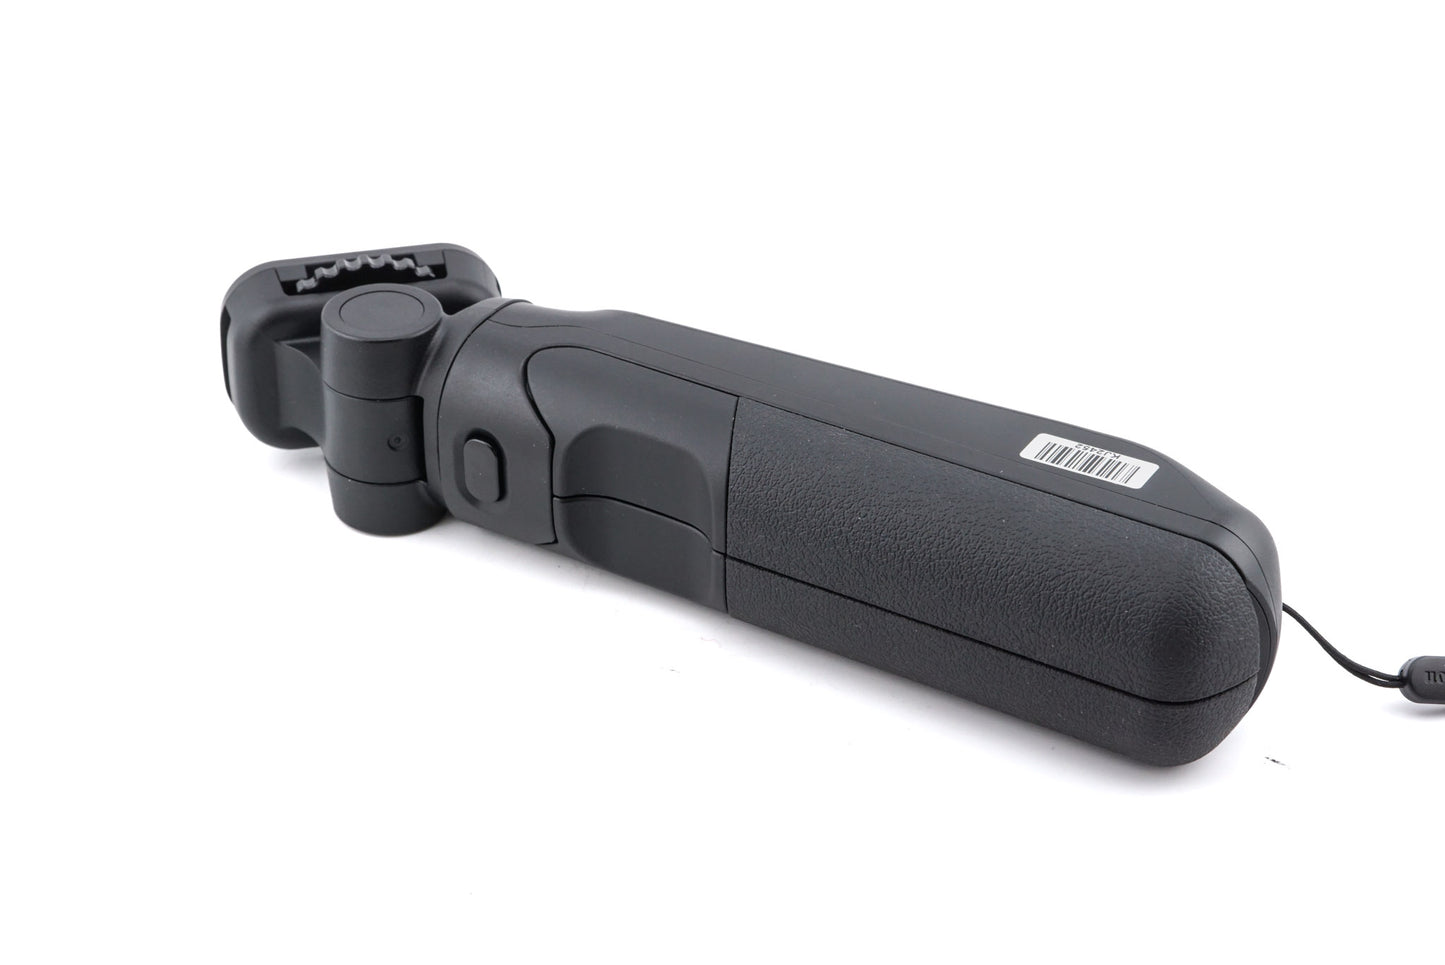 Canon HG-100TBR Tripod Grip + BR-E1 Wireless Remote + DM-E100 Stereo Microphone